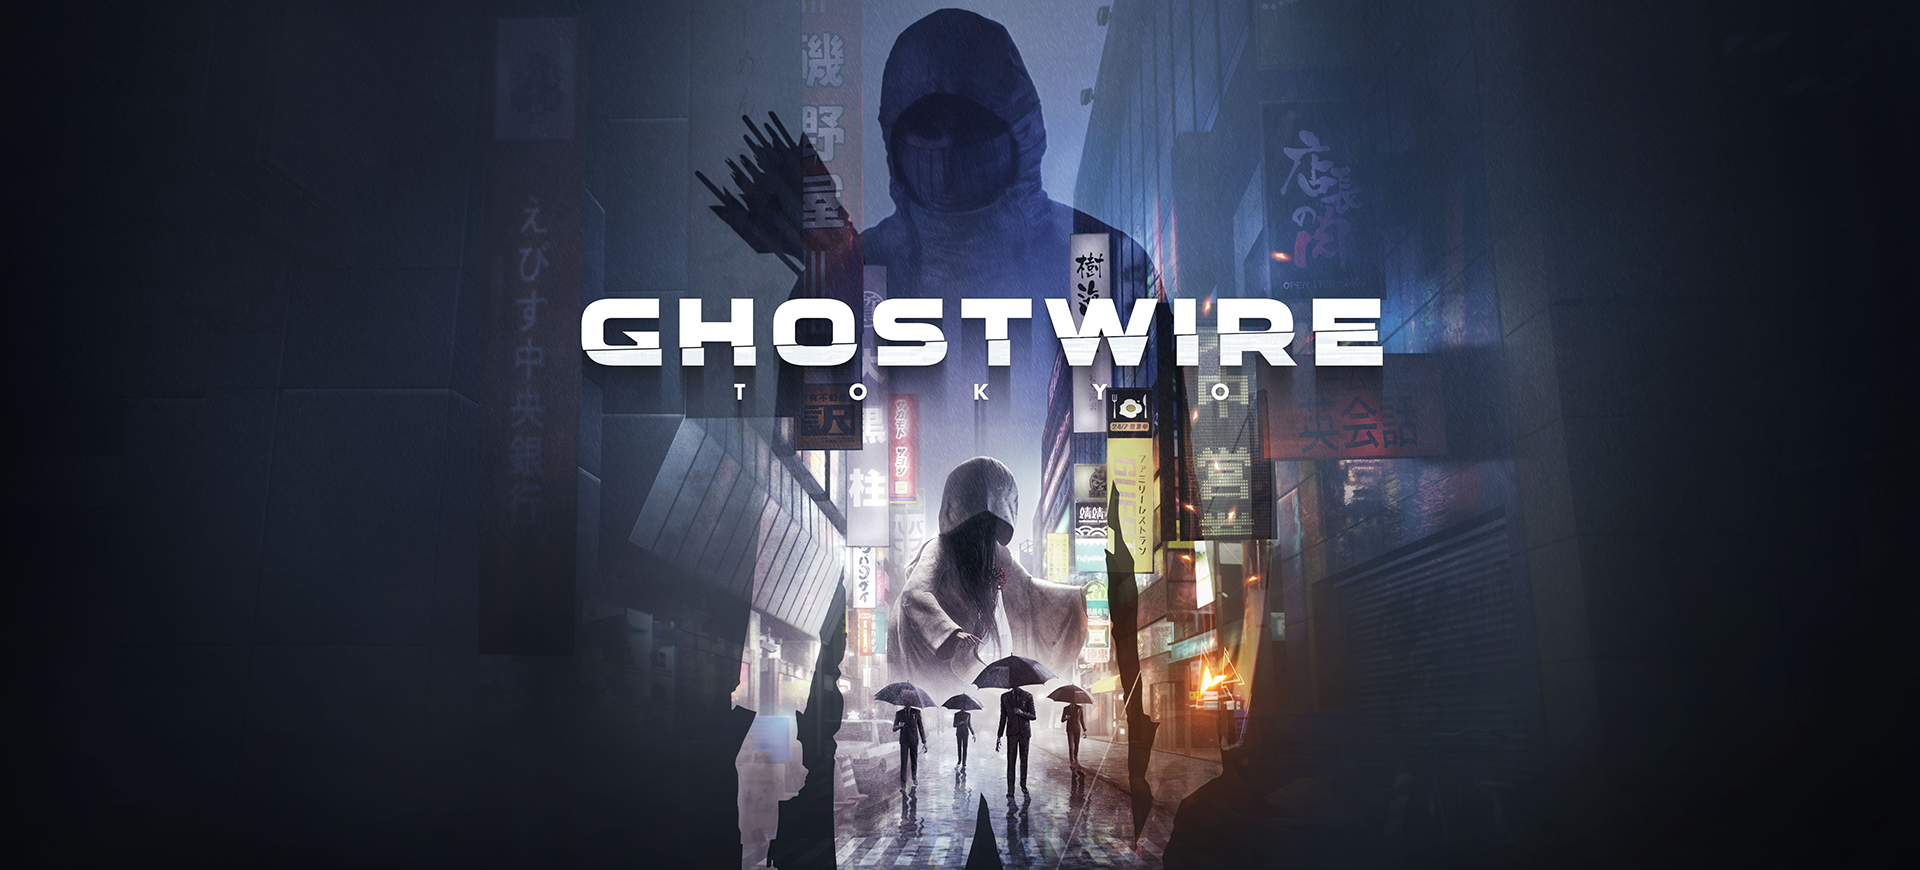 Ghostwire: Tokyo arendaja paljastab uue projekti Evil Within 2 režissööriga